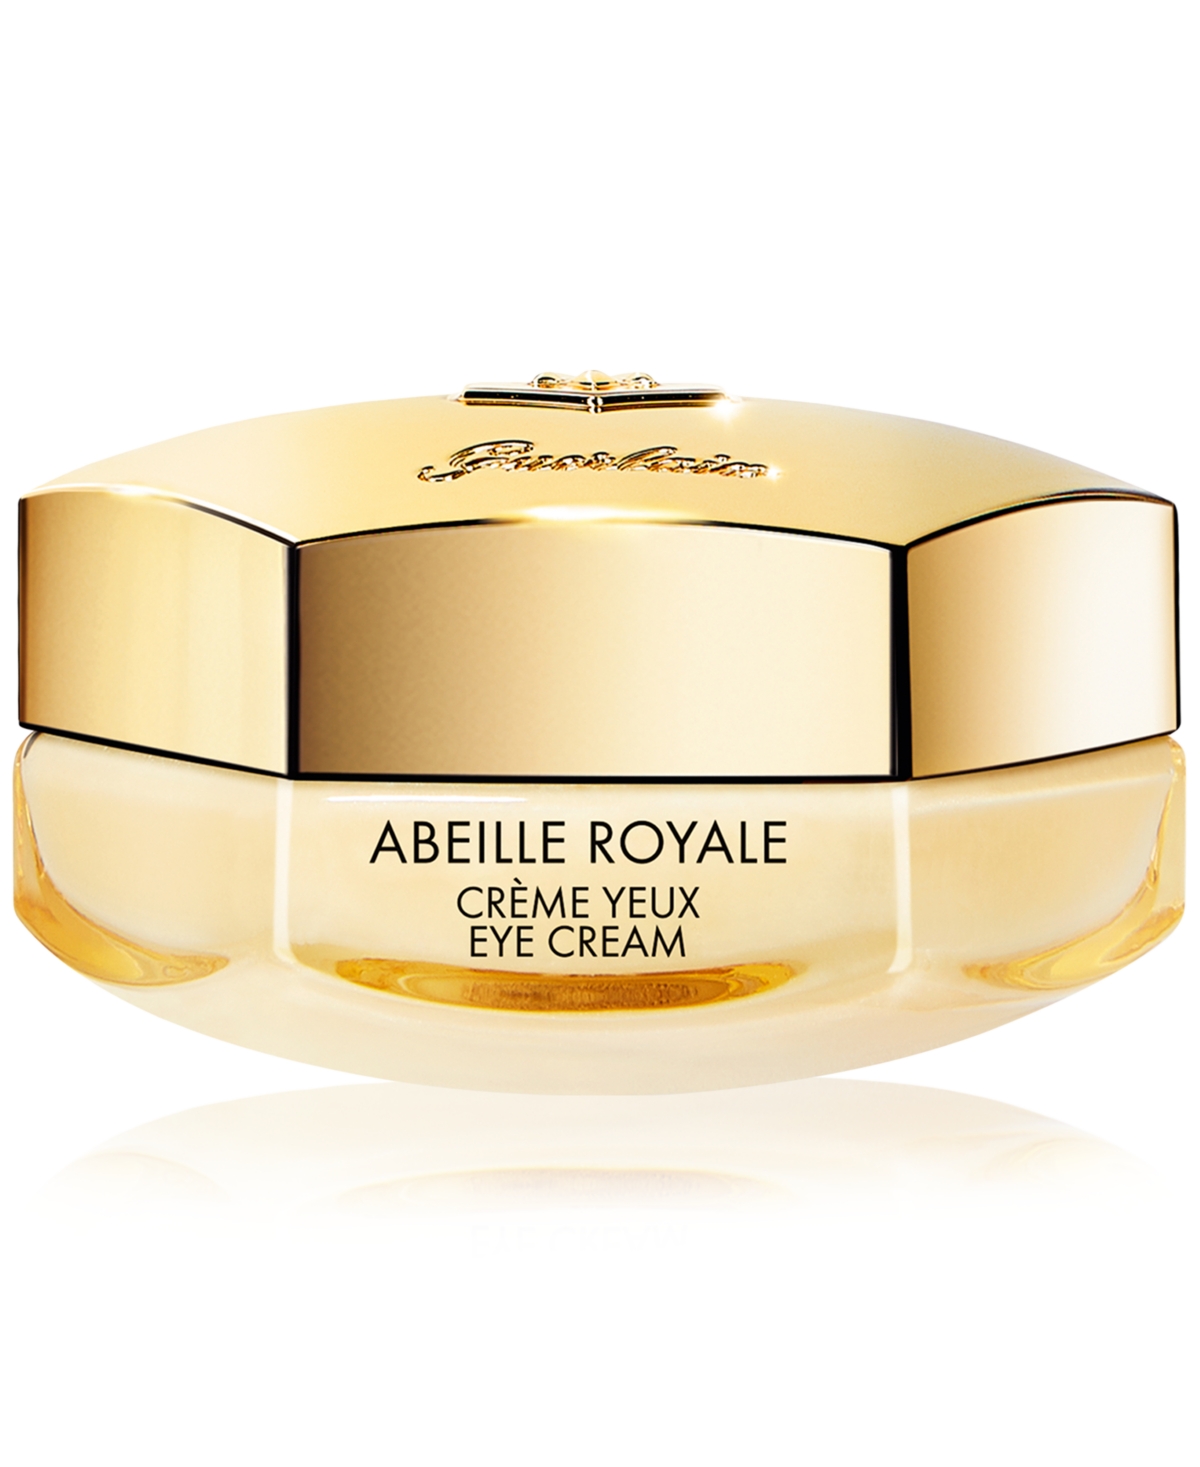 Abeille Royale Eye Cream, 0.5 oz. - N/a